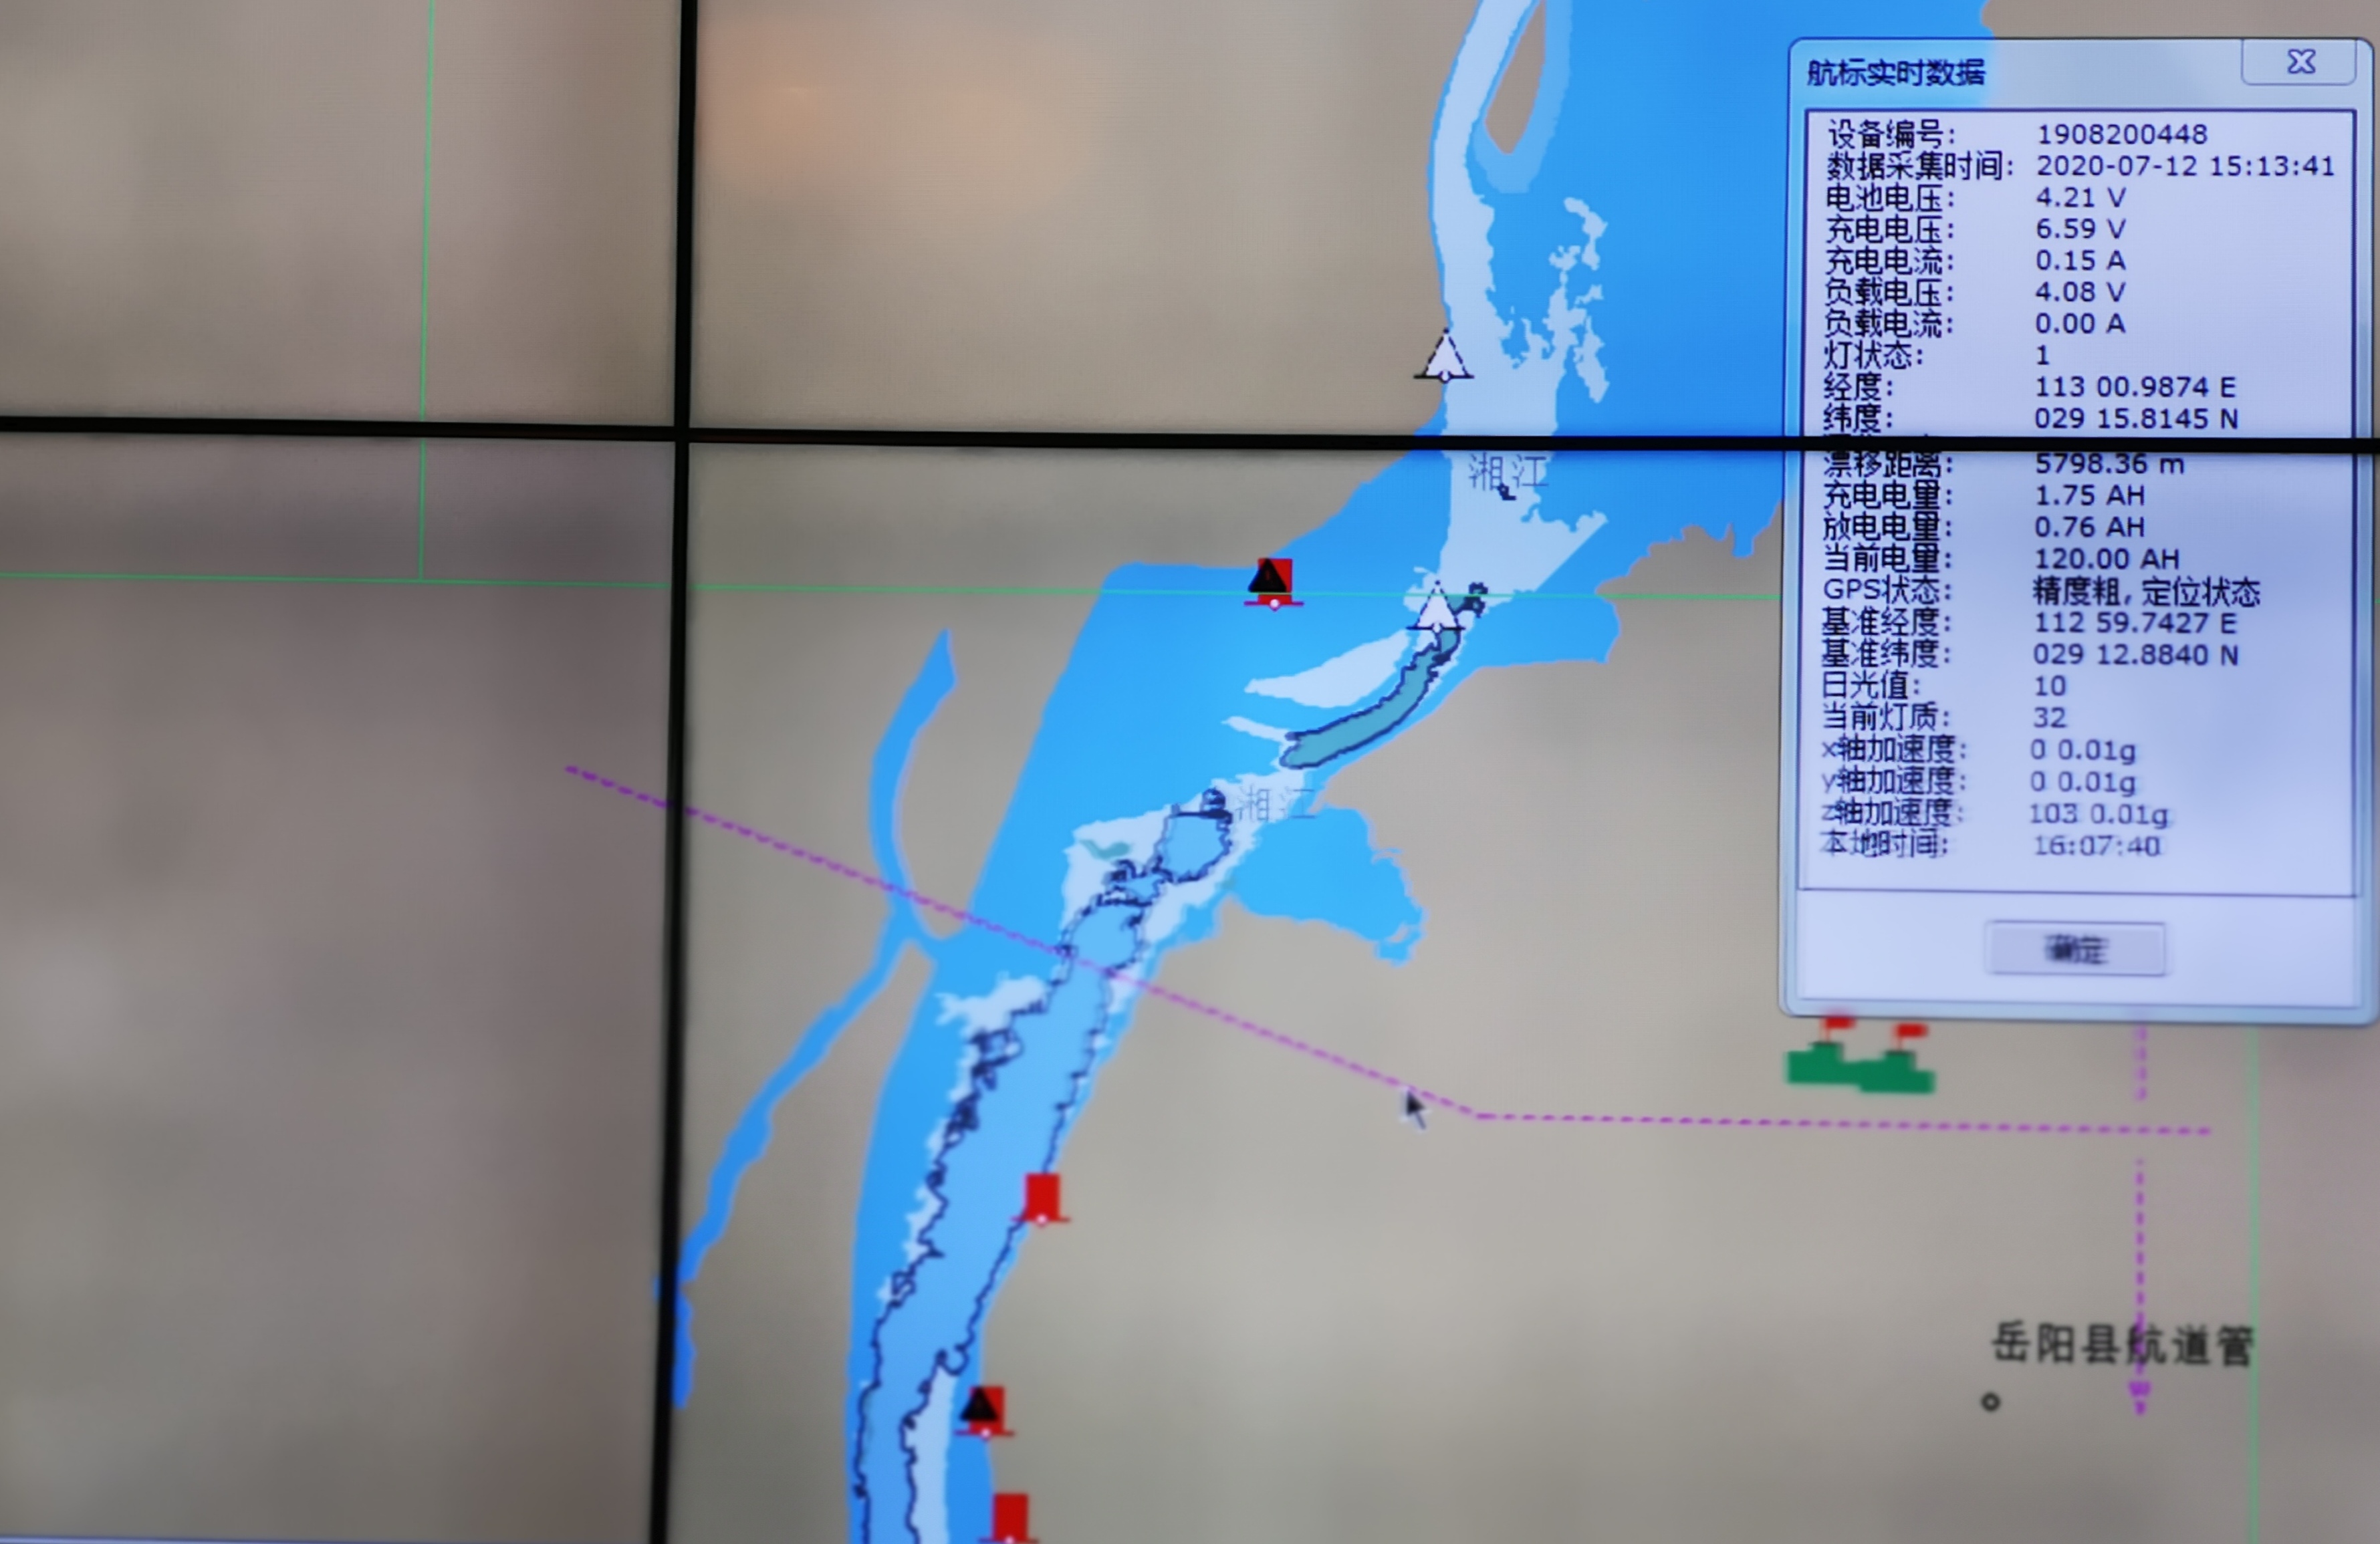 湘江航道装上“千里眼” 湖南首套电子航道图系统助力防汛抗洪